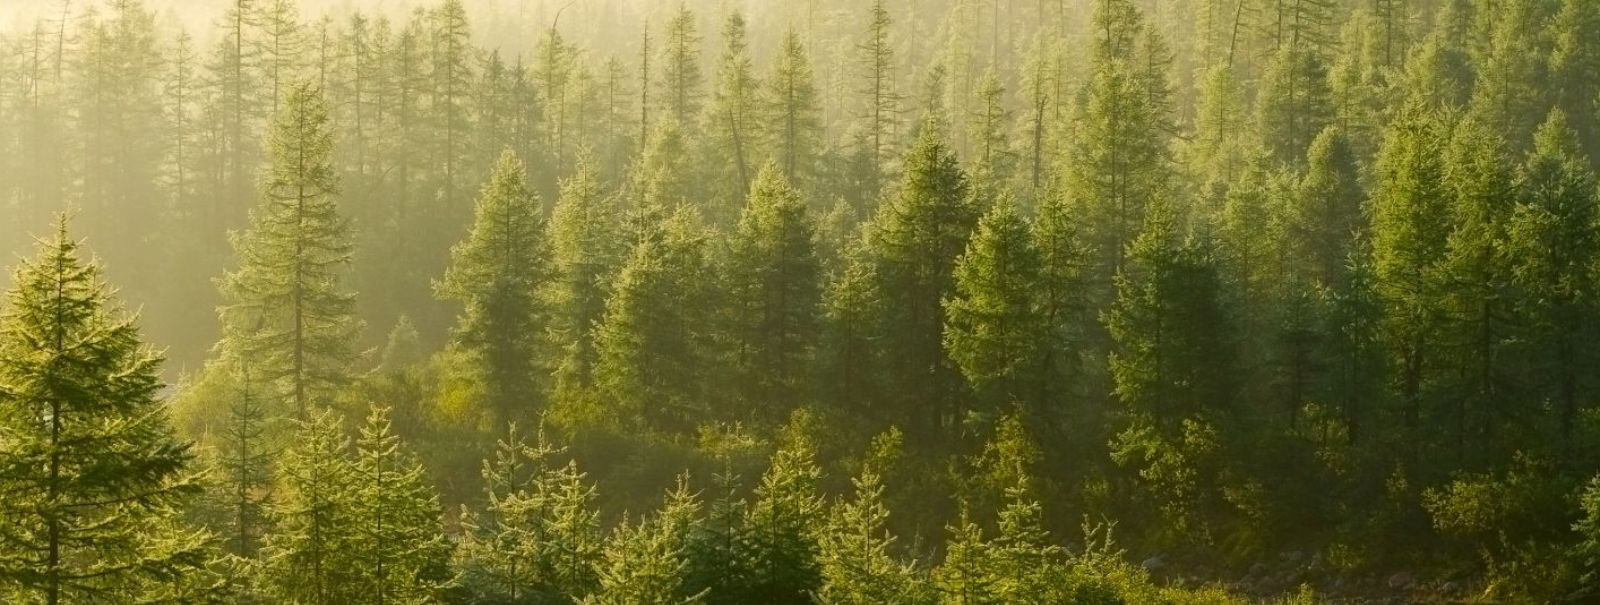 Metsade hooldamine on oluline tegevus, mis tagab metsade jätkusuutliku ...